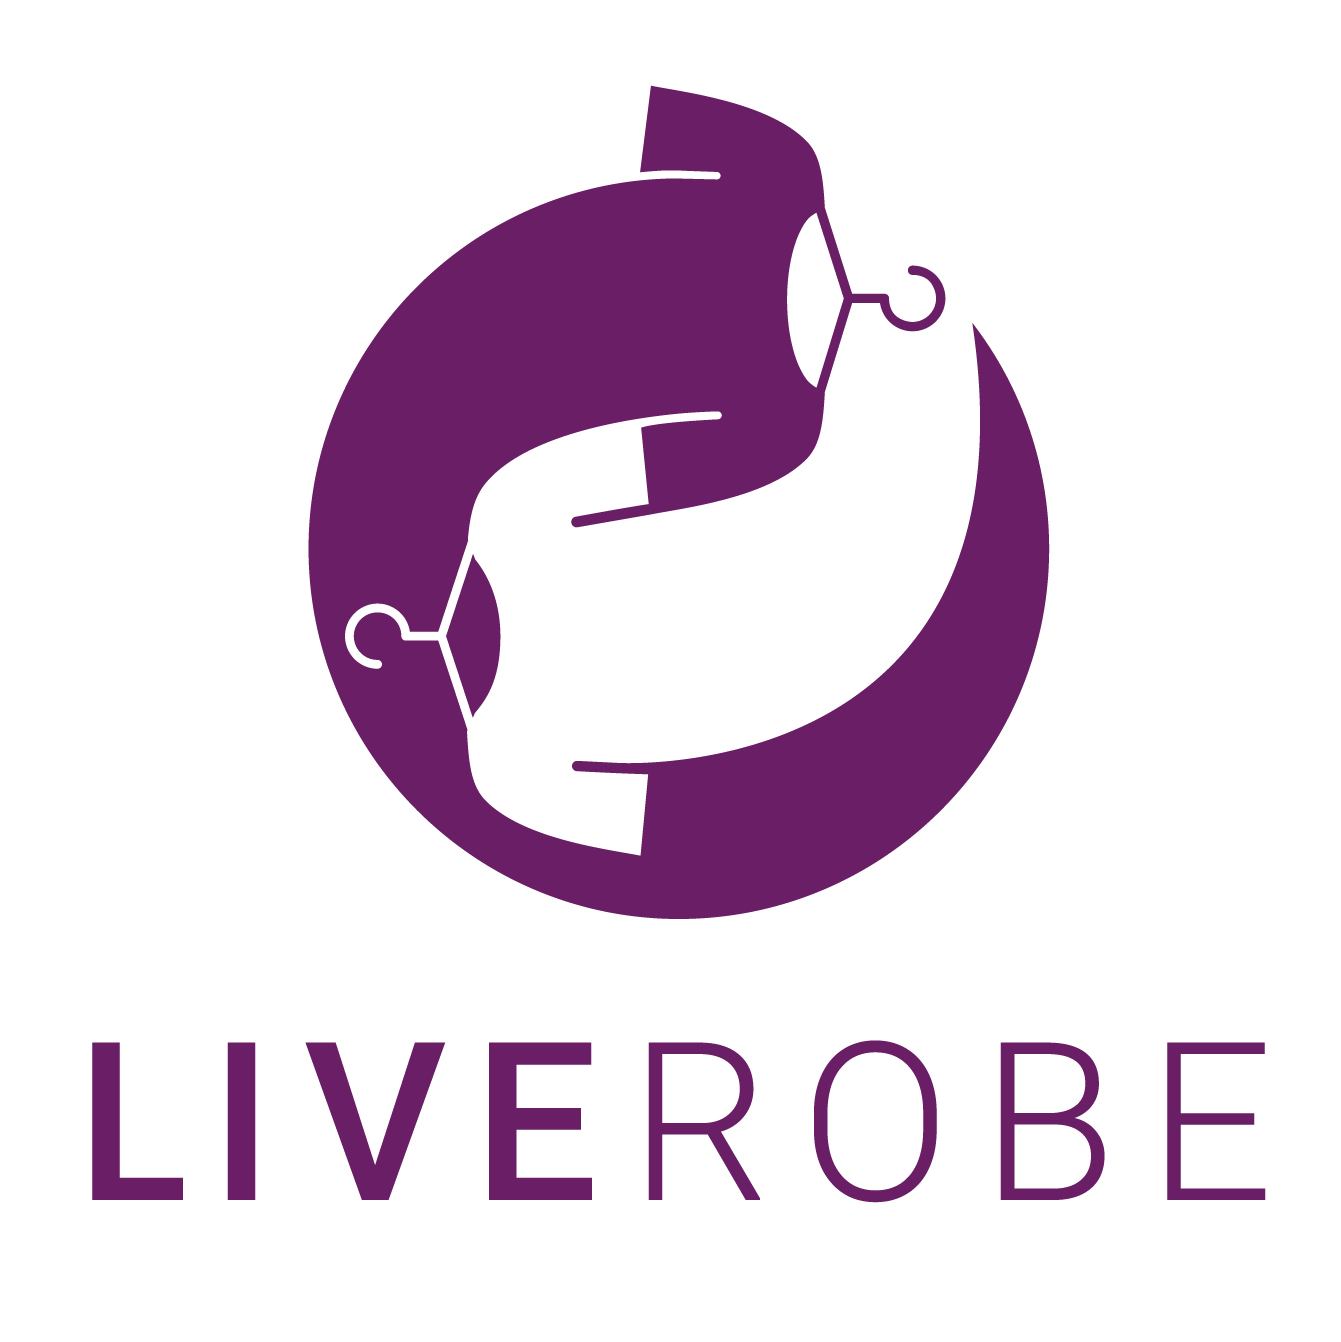 Liverobe_landing-logoLR